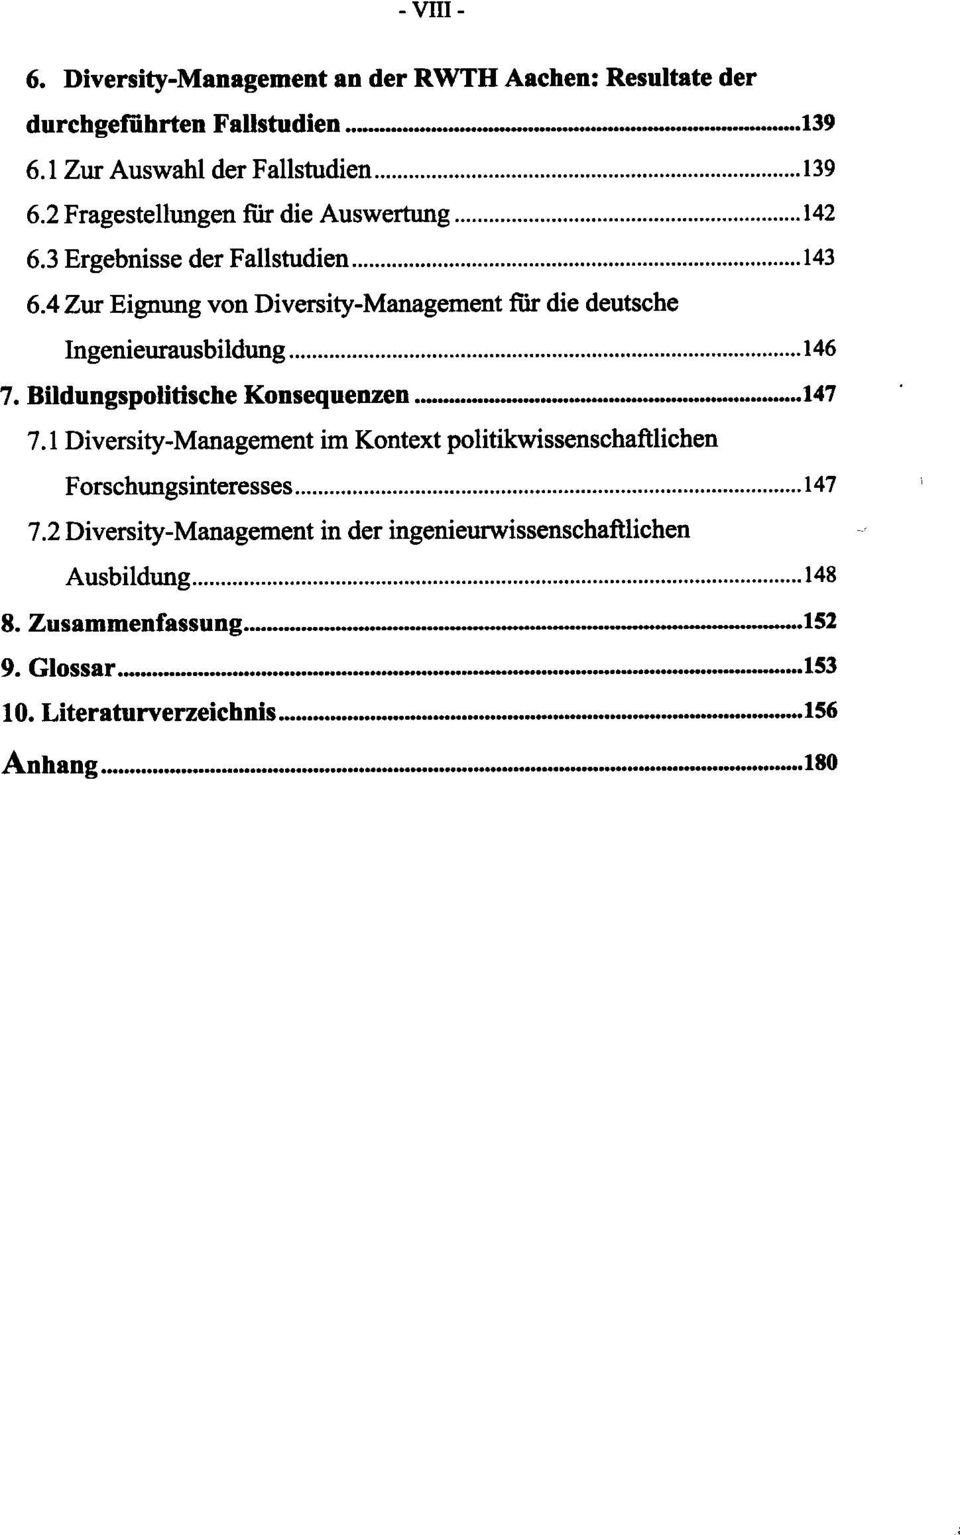 4 Zur Eignung von Diversity-Management für die deutsche Ingenieurausbildung 146 7. Bildungspolitische Konsequenzen 147 7.